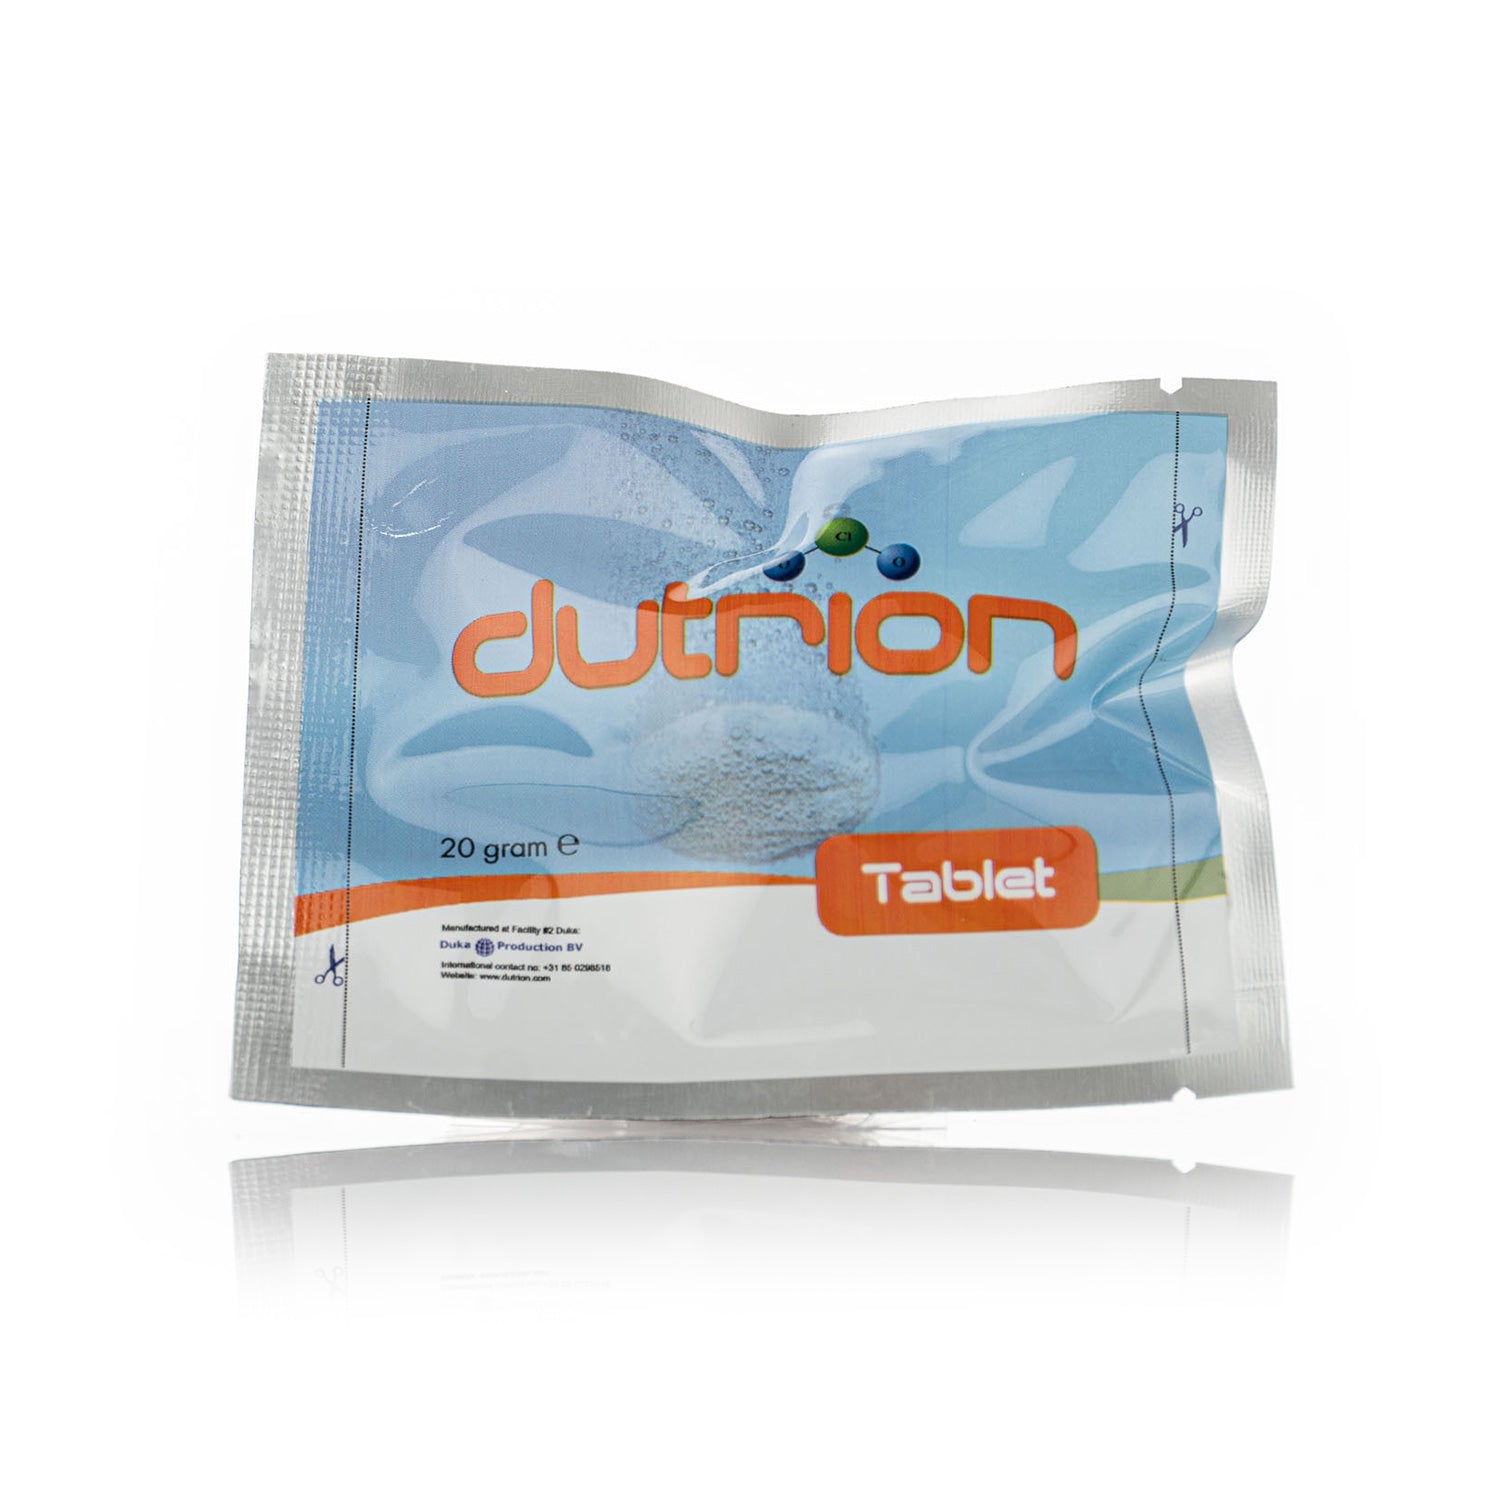 sns-dutrion-20-gram-chlorine-tablet-for-fogger-treatments